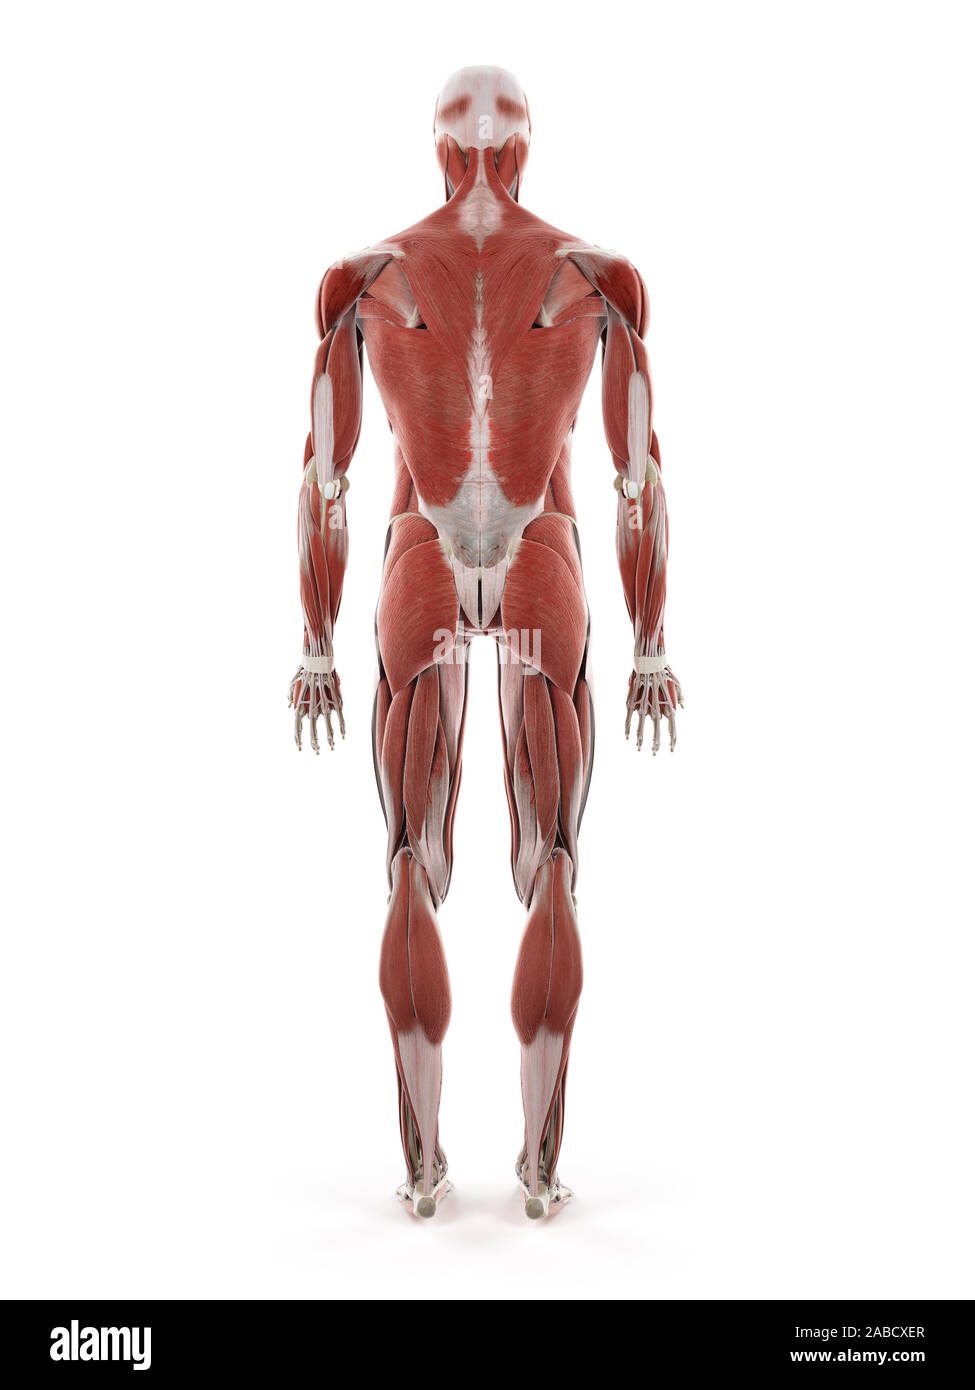 3D prestados ilustración médica precisa del sistema muscular humano Foto de stock